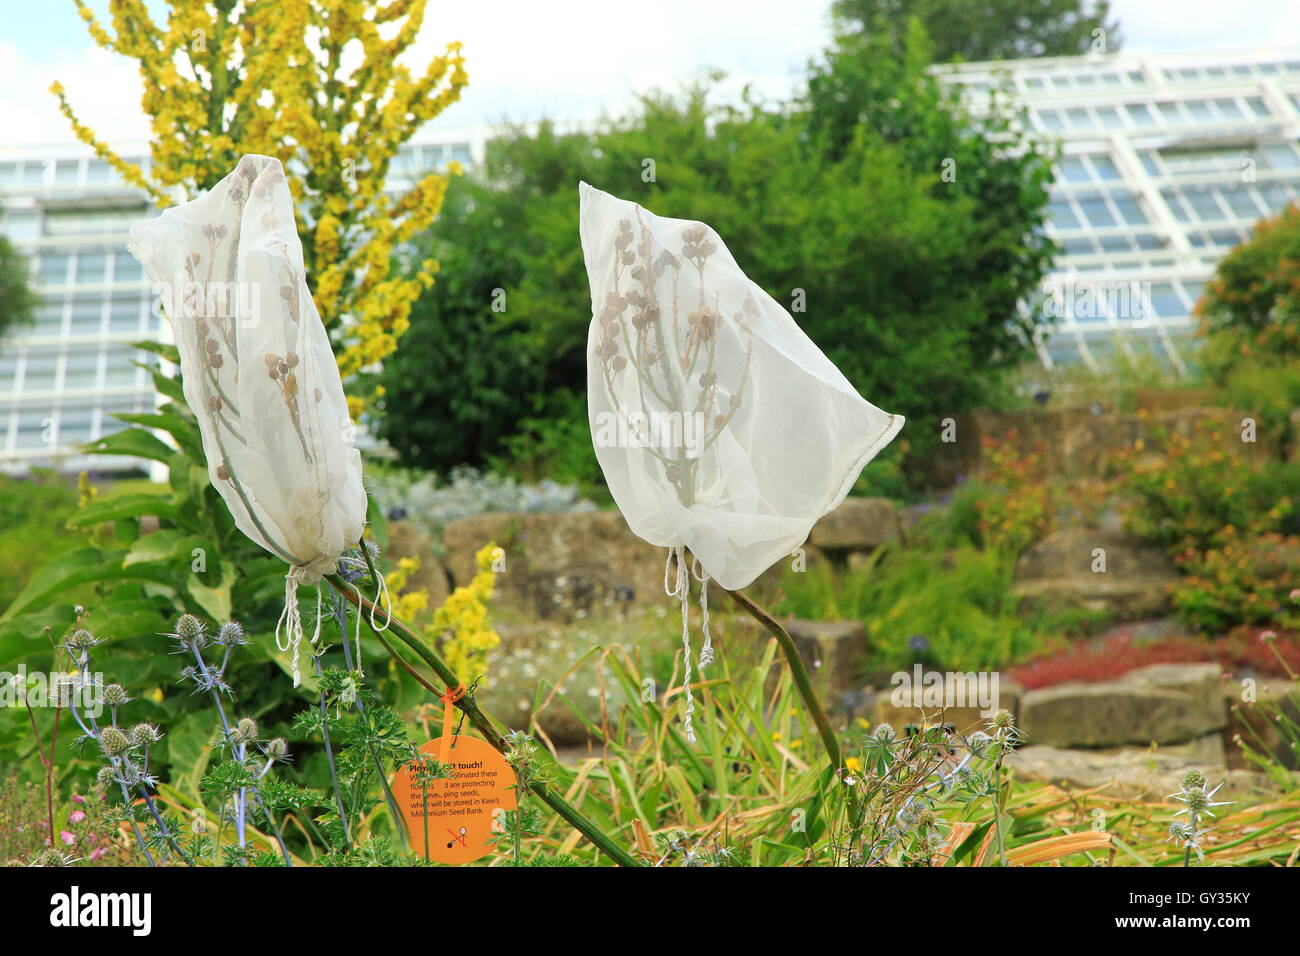 Les graines des plantes dans des filets, Kew Gardens, Royal Botanic Gardens, London, England, UK Banque D'Images